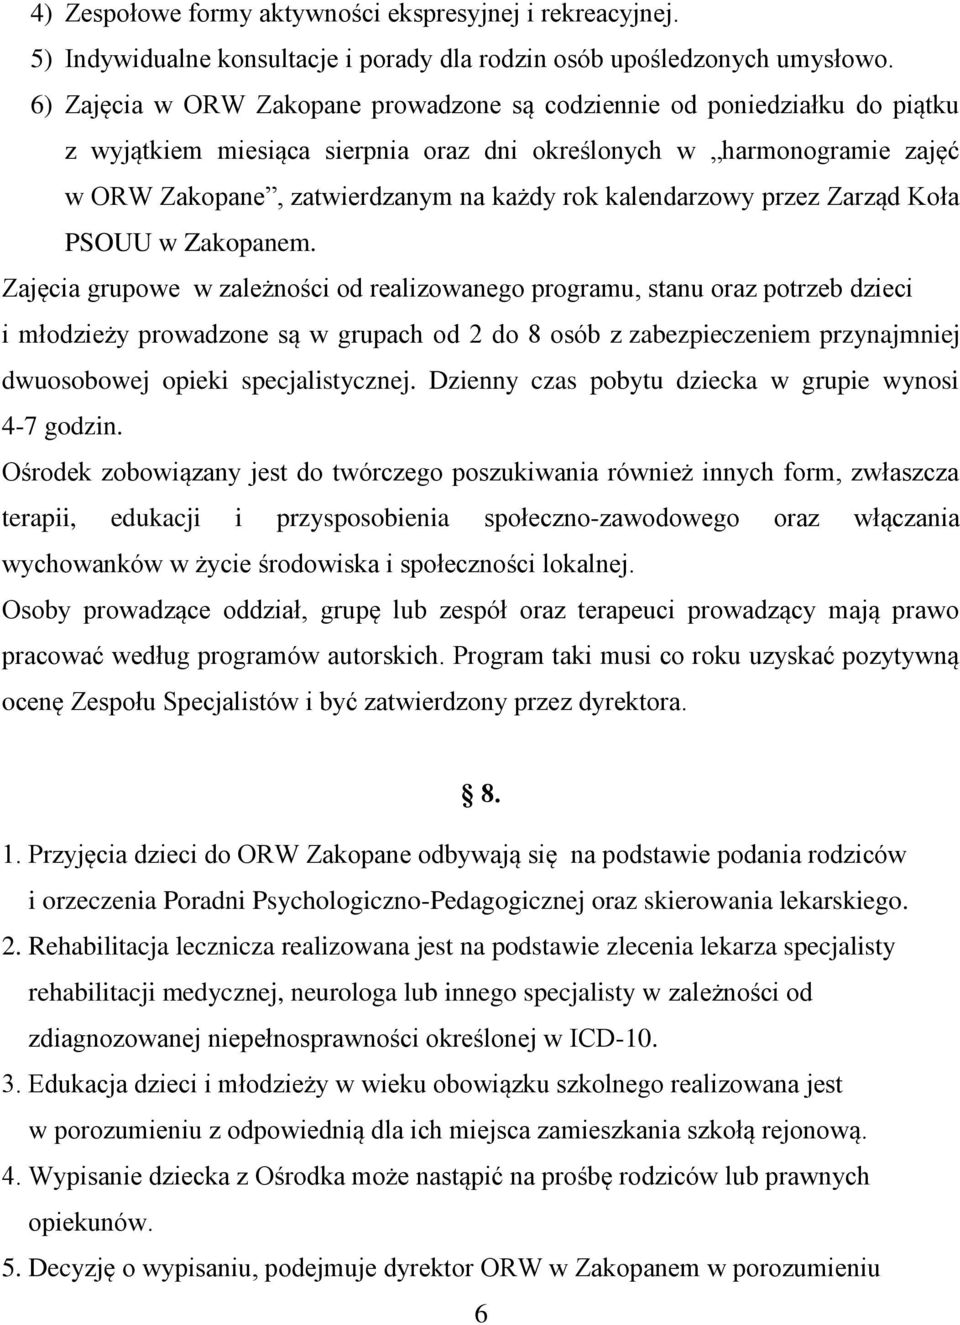 kalendarzowy przez Zarząd Koła PSOUU w Zakopanem.